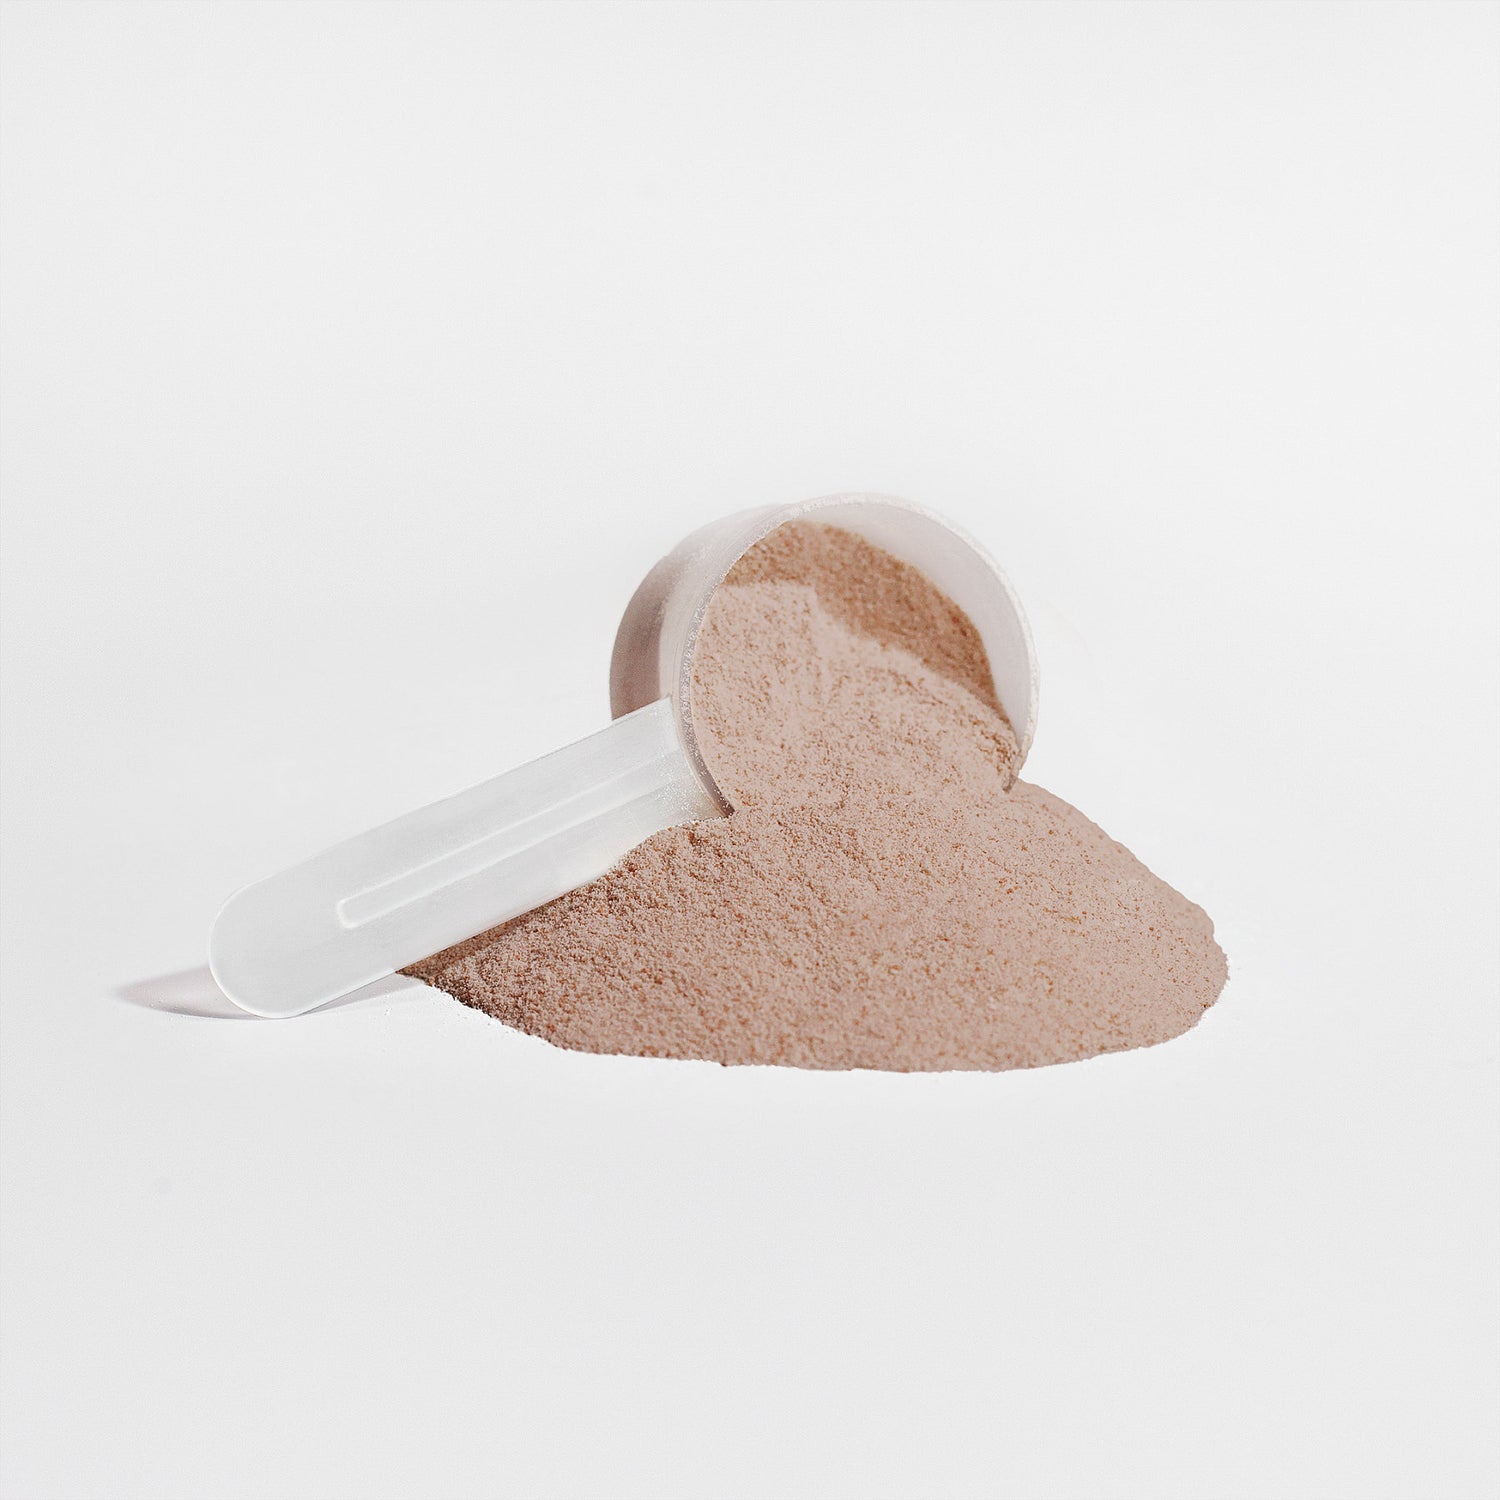 Simple Supplements Vegan Protein Chocolate Scoop 